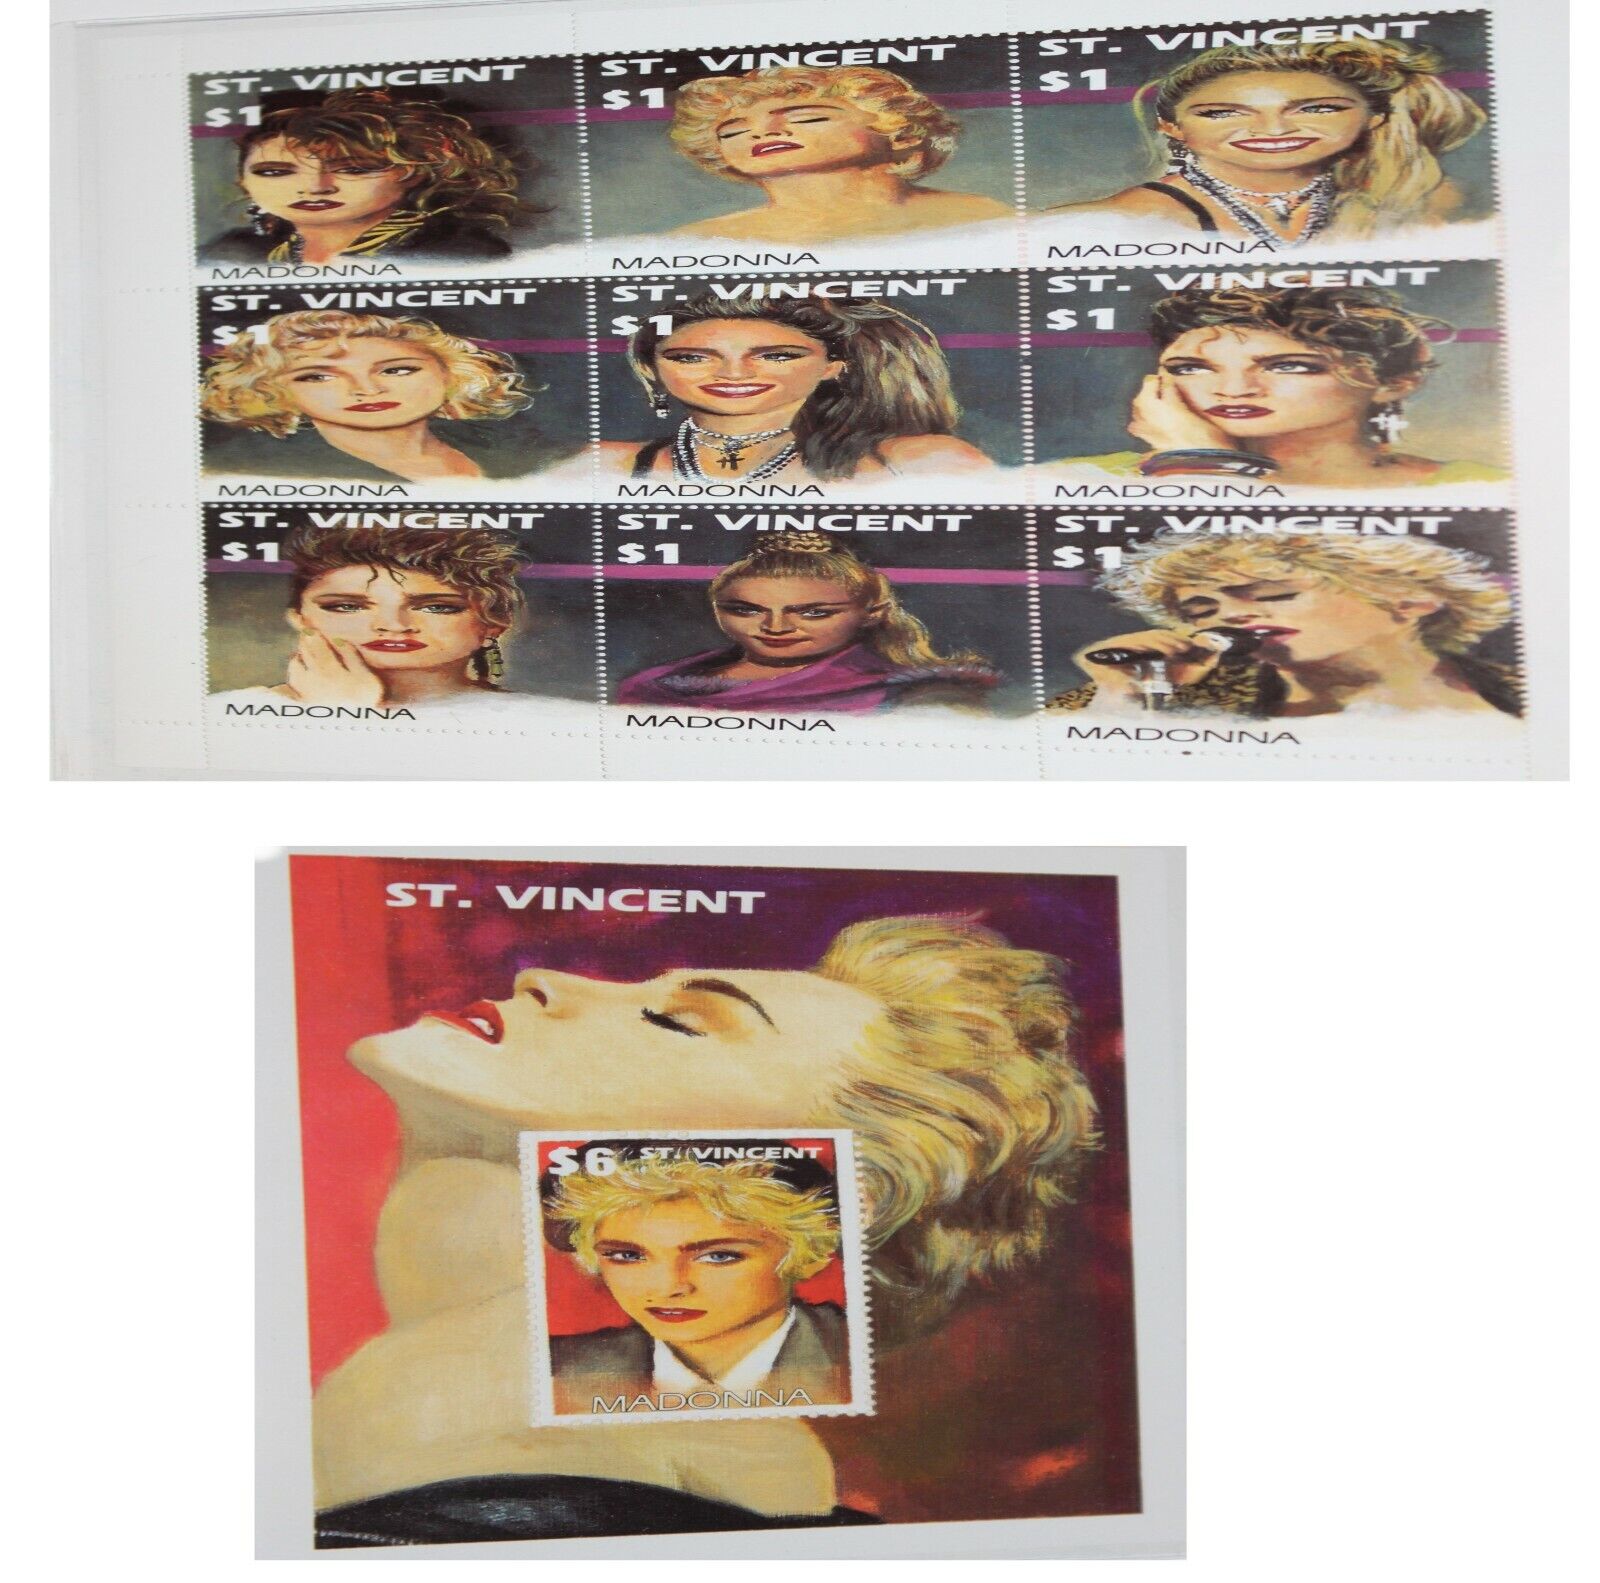  Madonna ST Vincent 1$ & 6$ Postage Stamp COA Lot of 2 Без бренда